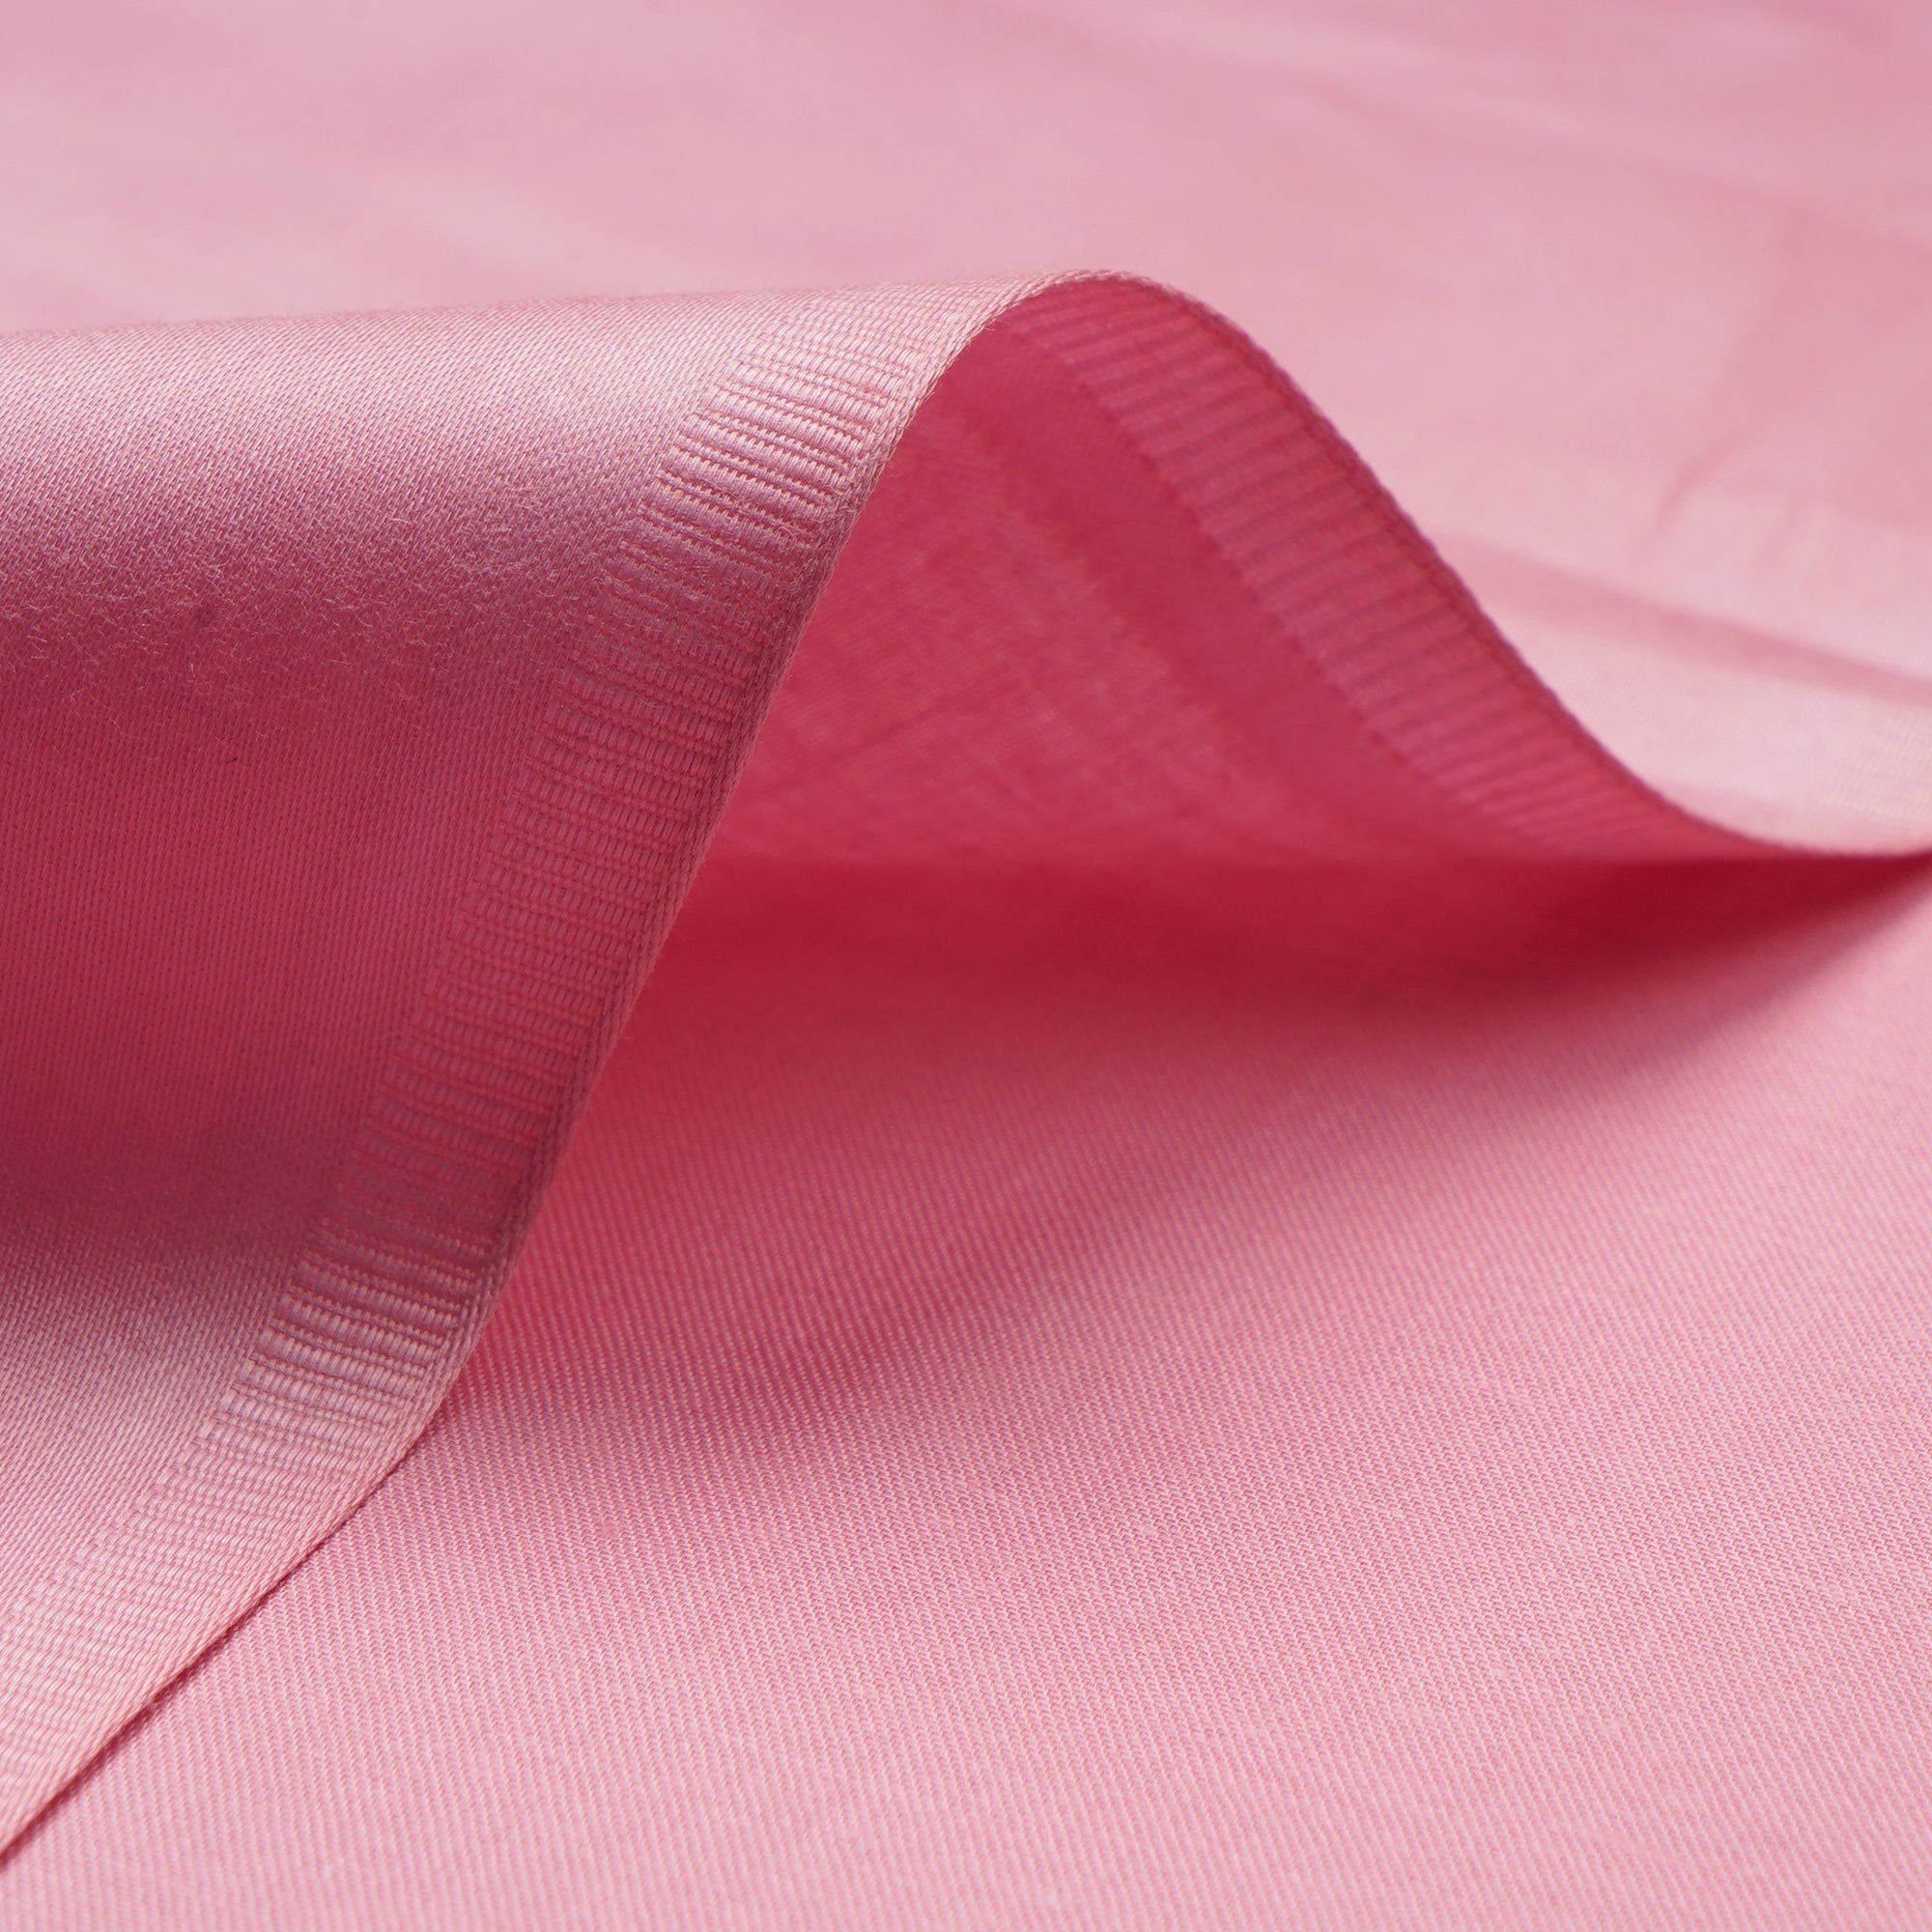 Flamingo Premium Mill Dyed Glazed Cotton Satin Fabric